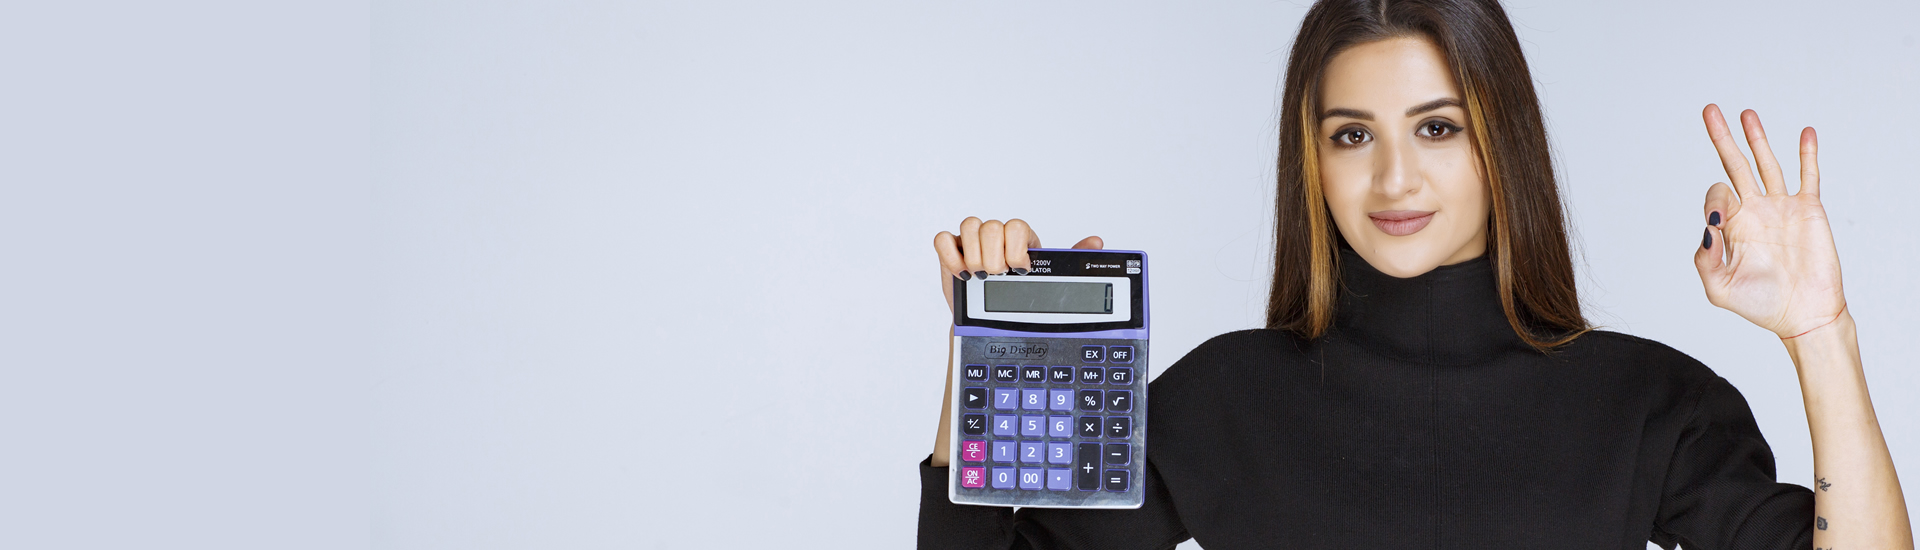 Mujer muestra una calculadora con su mano derecha, mientras con la izquierda realiza gesto de aprobación 